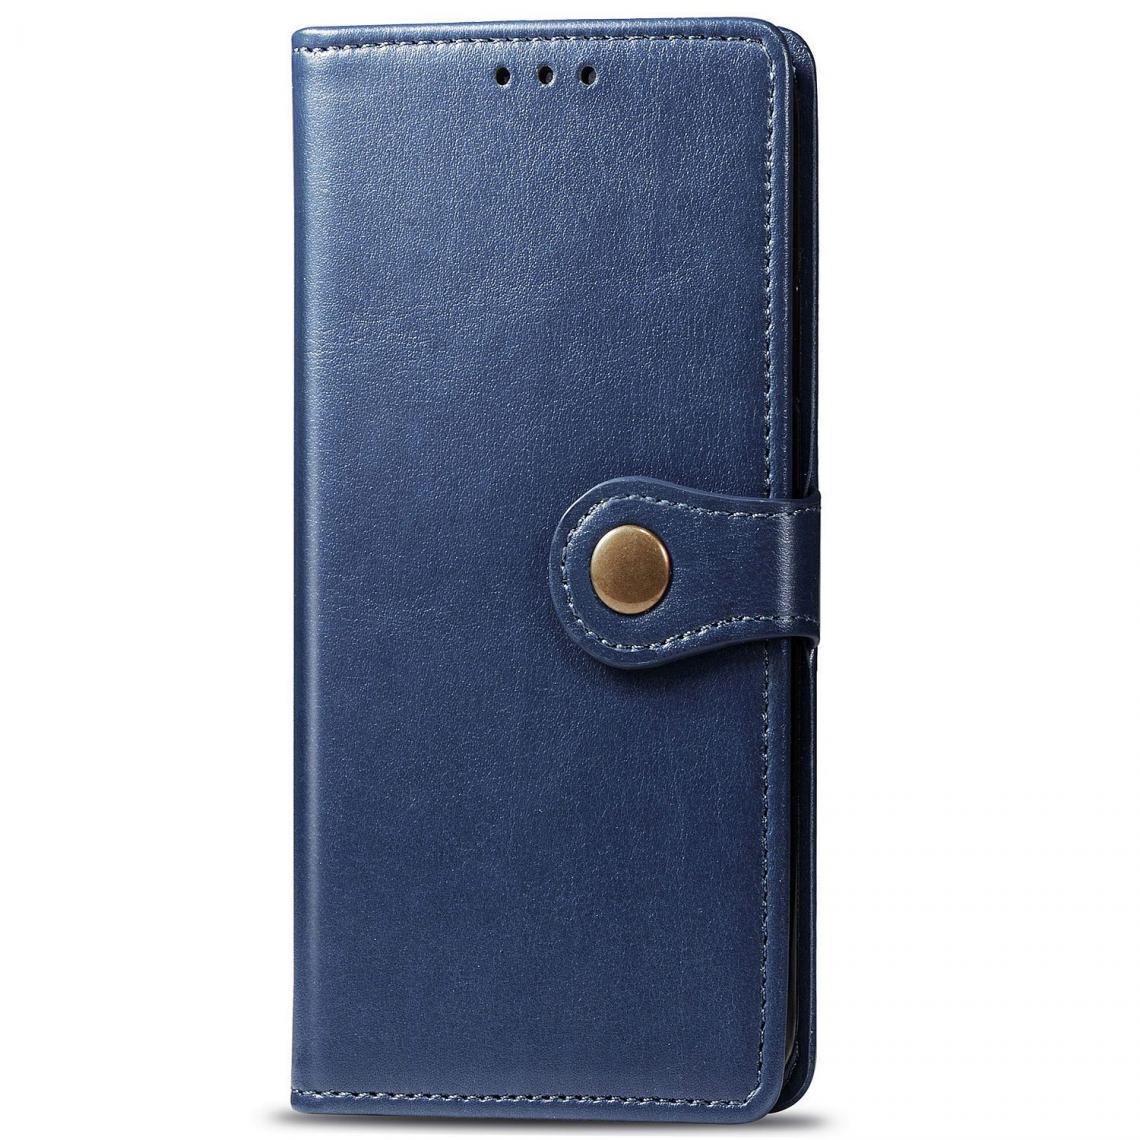 OtterBox - Samsung Galaxy S8 Plus Housse Etui Coque de protection type portefeuille (Boucle) [Bleu] - Coque, étui smartphone